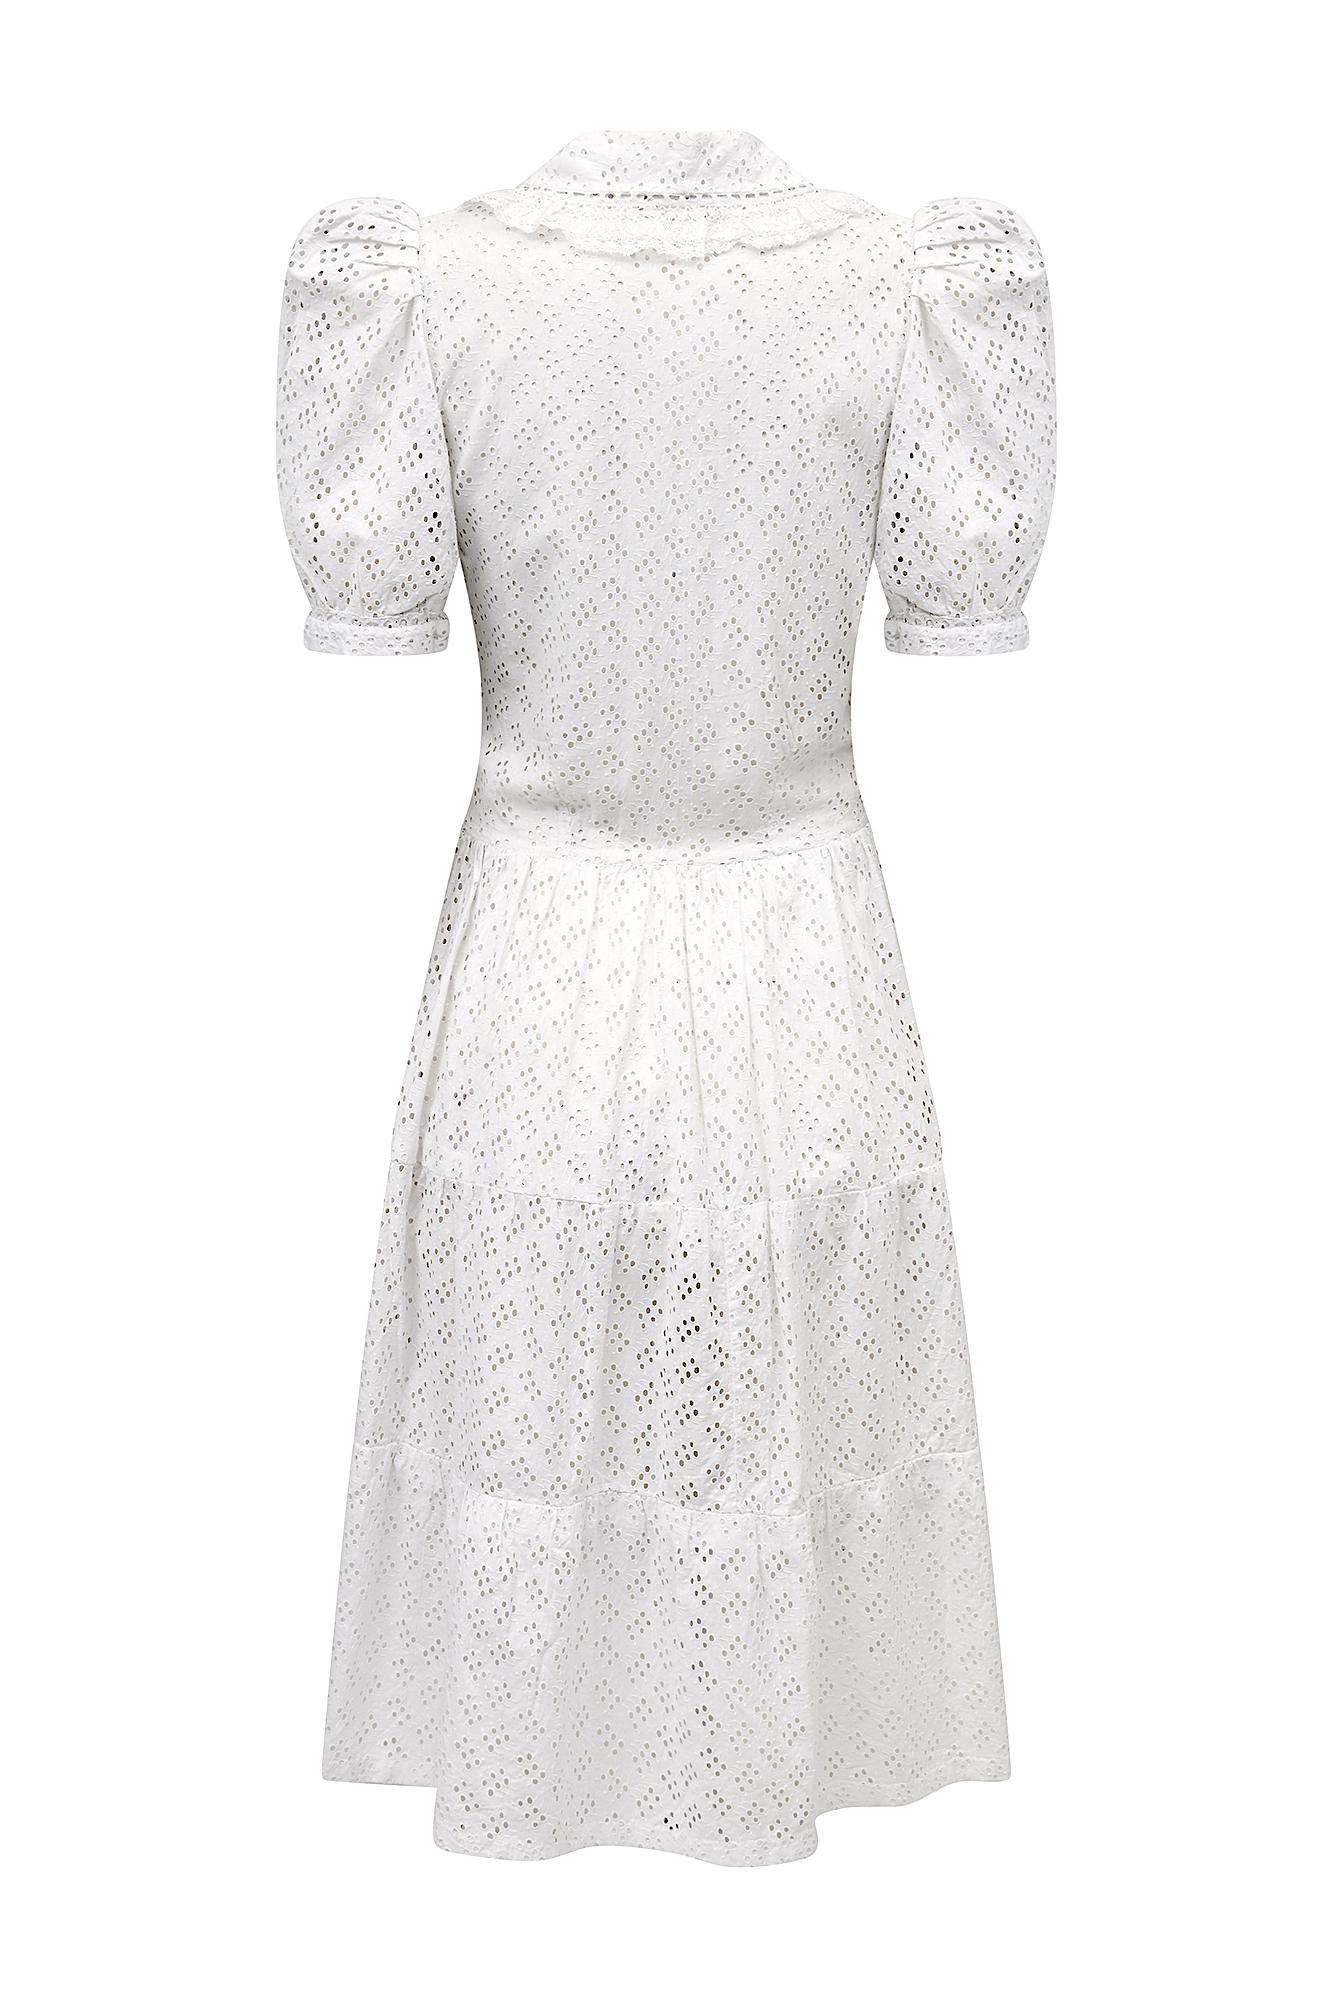 1940s white dress